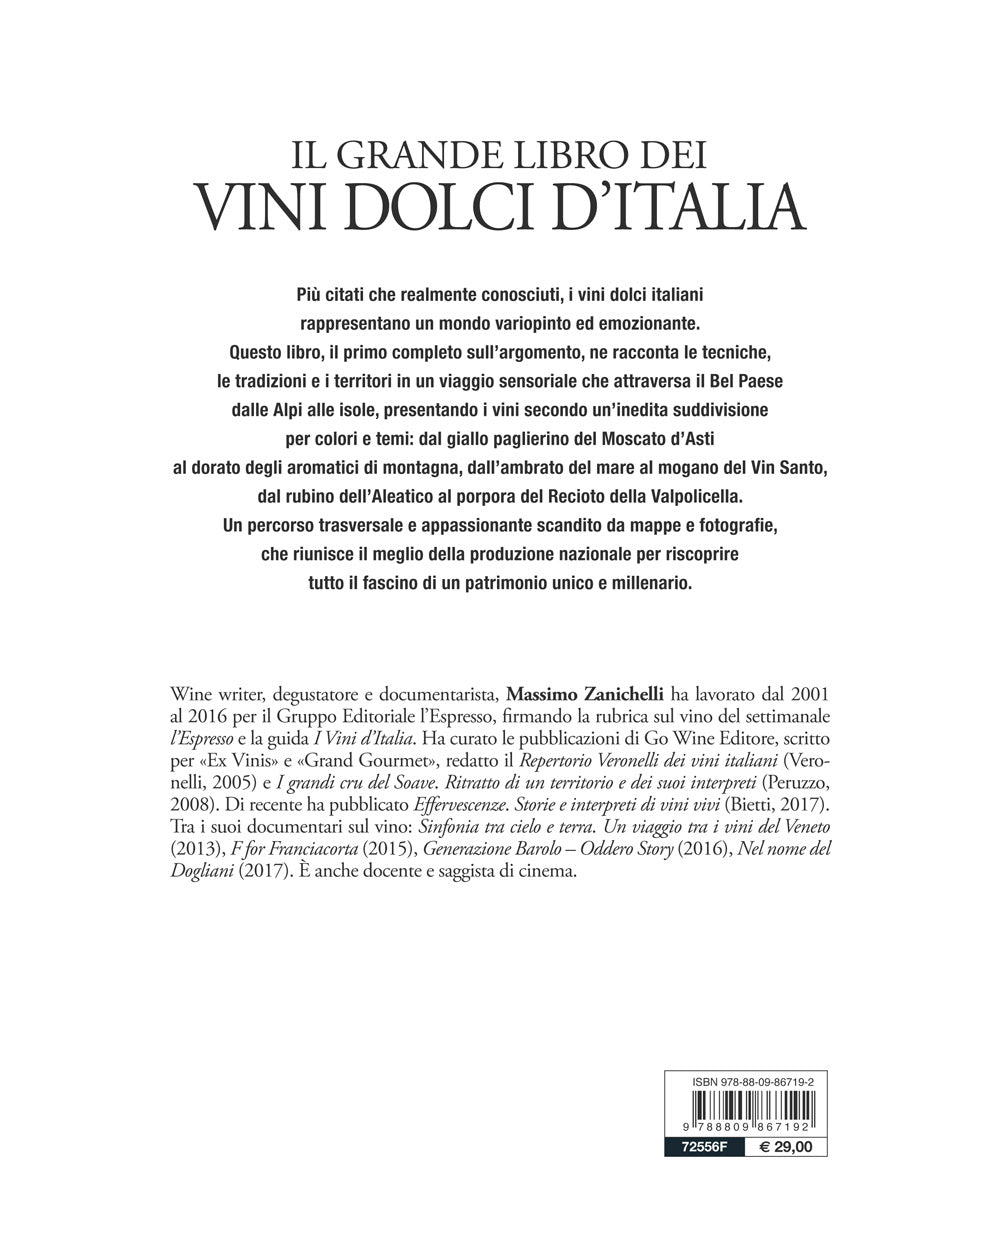 Il grande libro dei vini dolci d'Italia